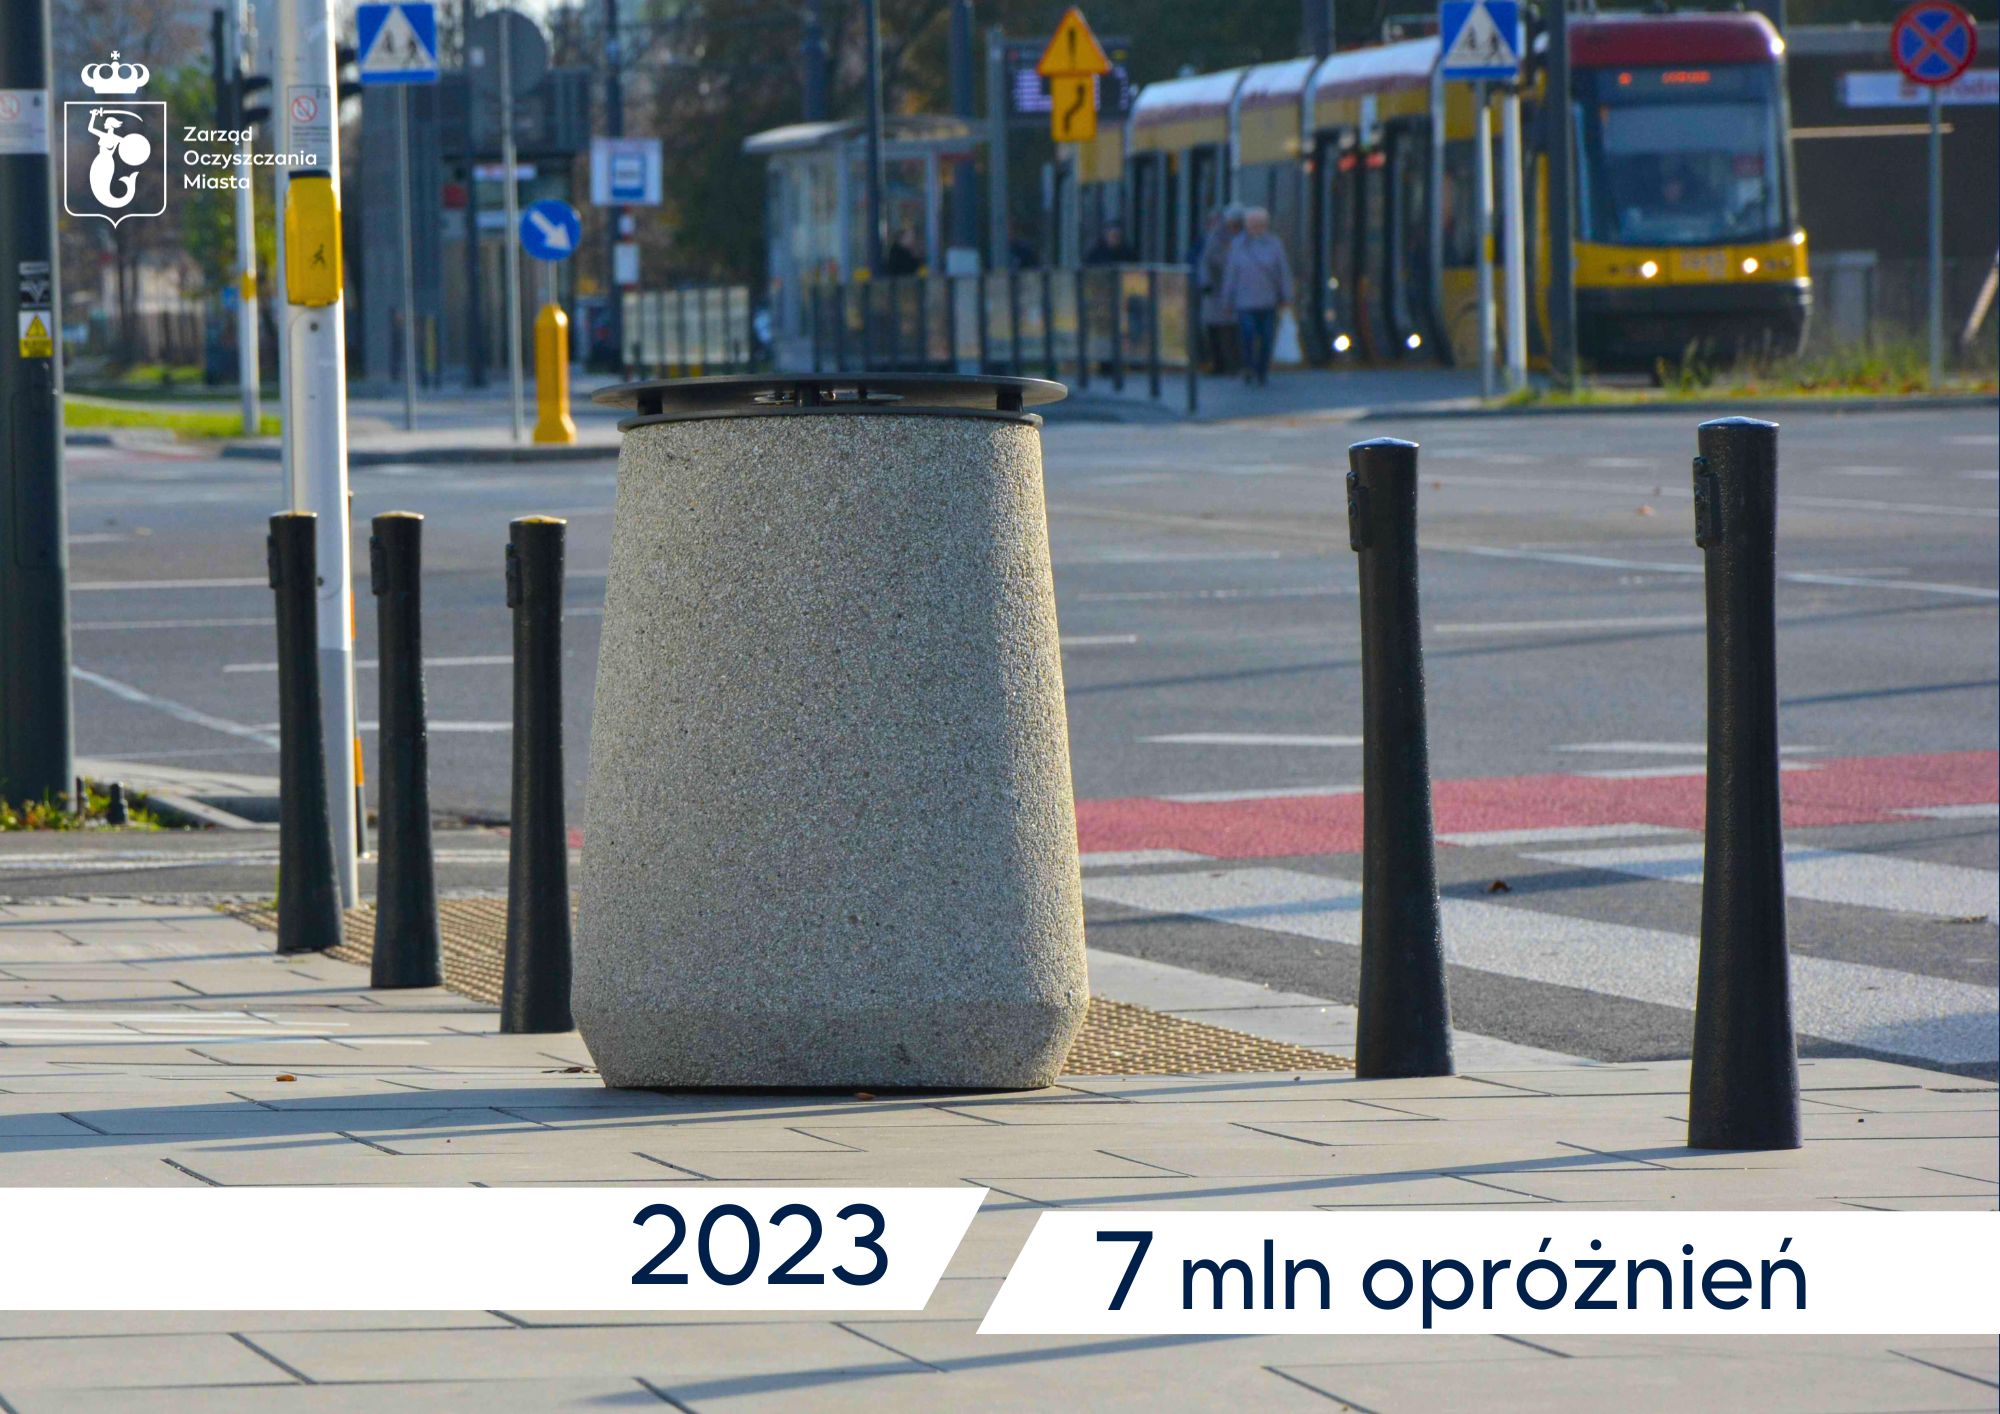 Kosz uliczny, w tle tramwaj, na dole napis - 2023 7 mln opróżnień. W rogu logotyp Zarządu Oczyszczania Miasta